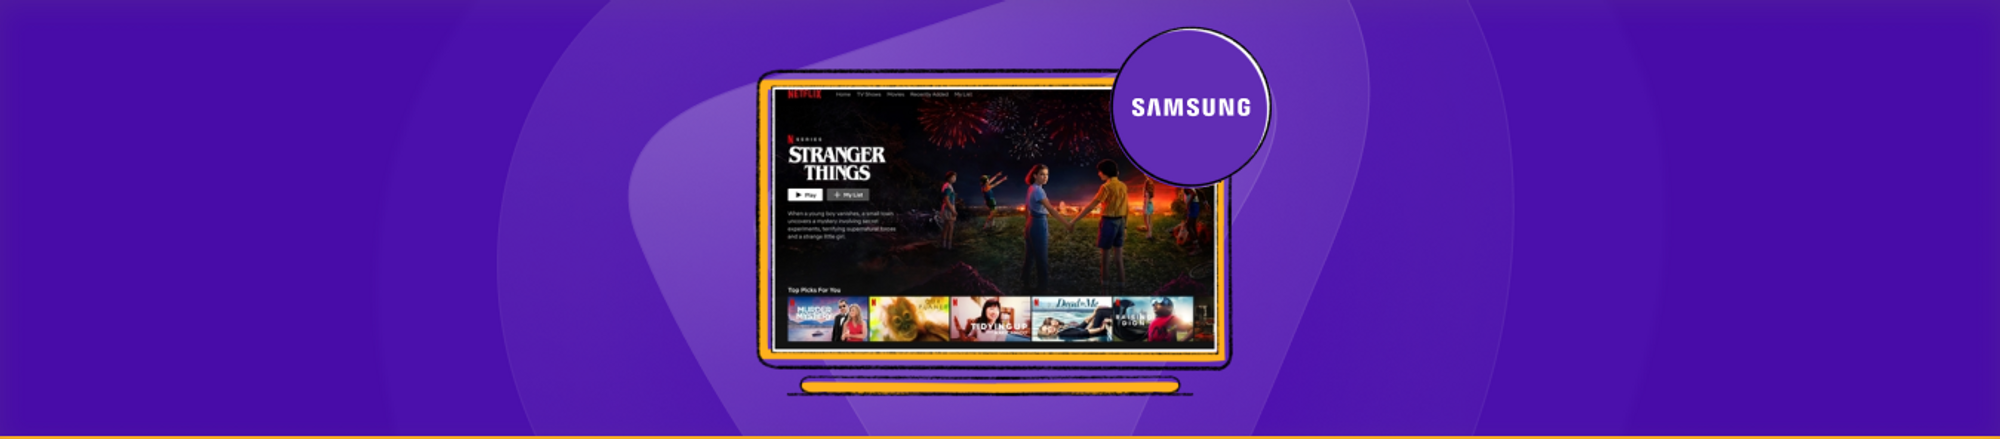 change region on Samsung smart tv banner